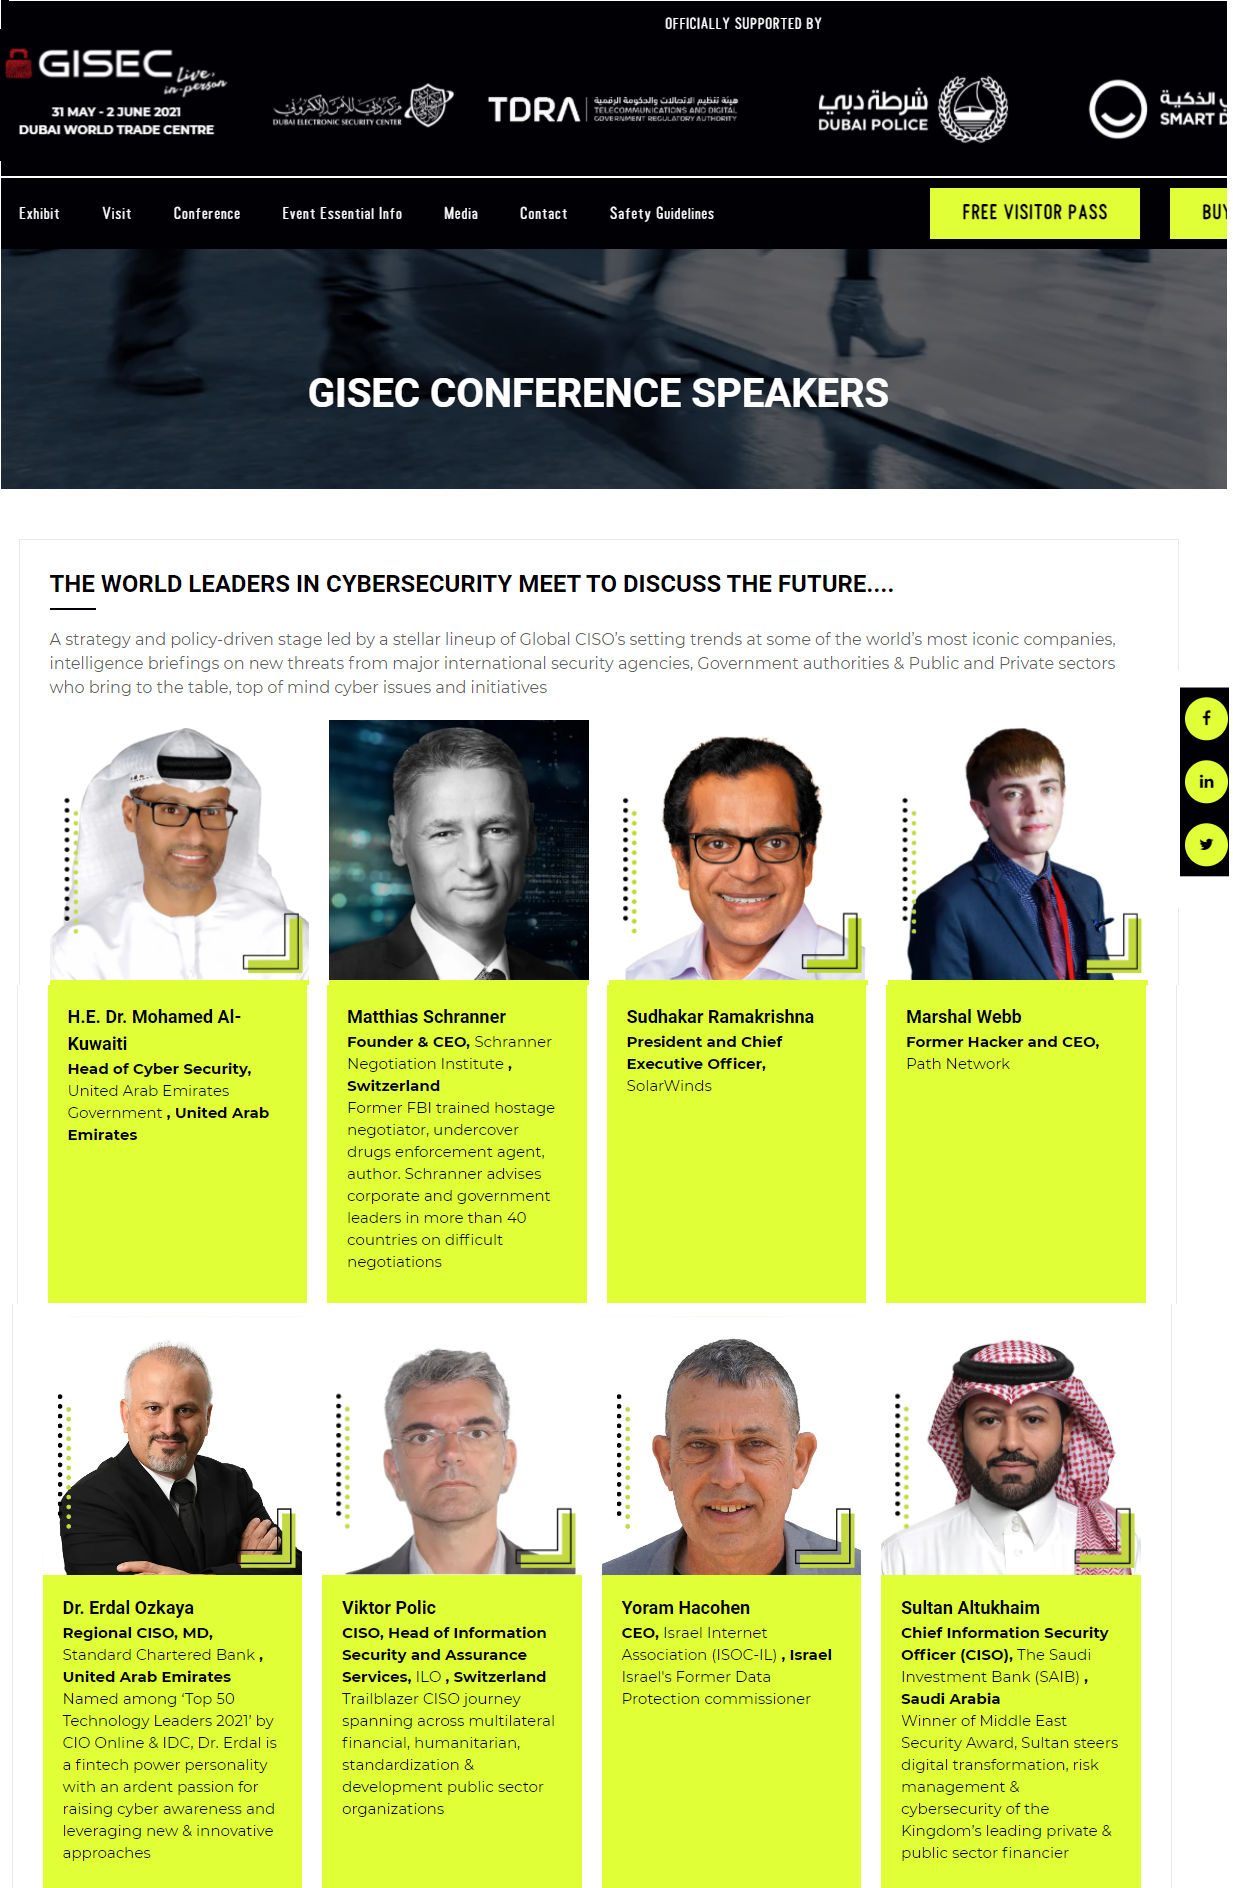 GISEC Speakers Erdal